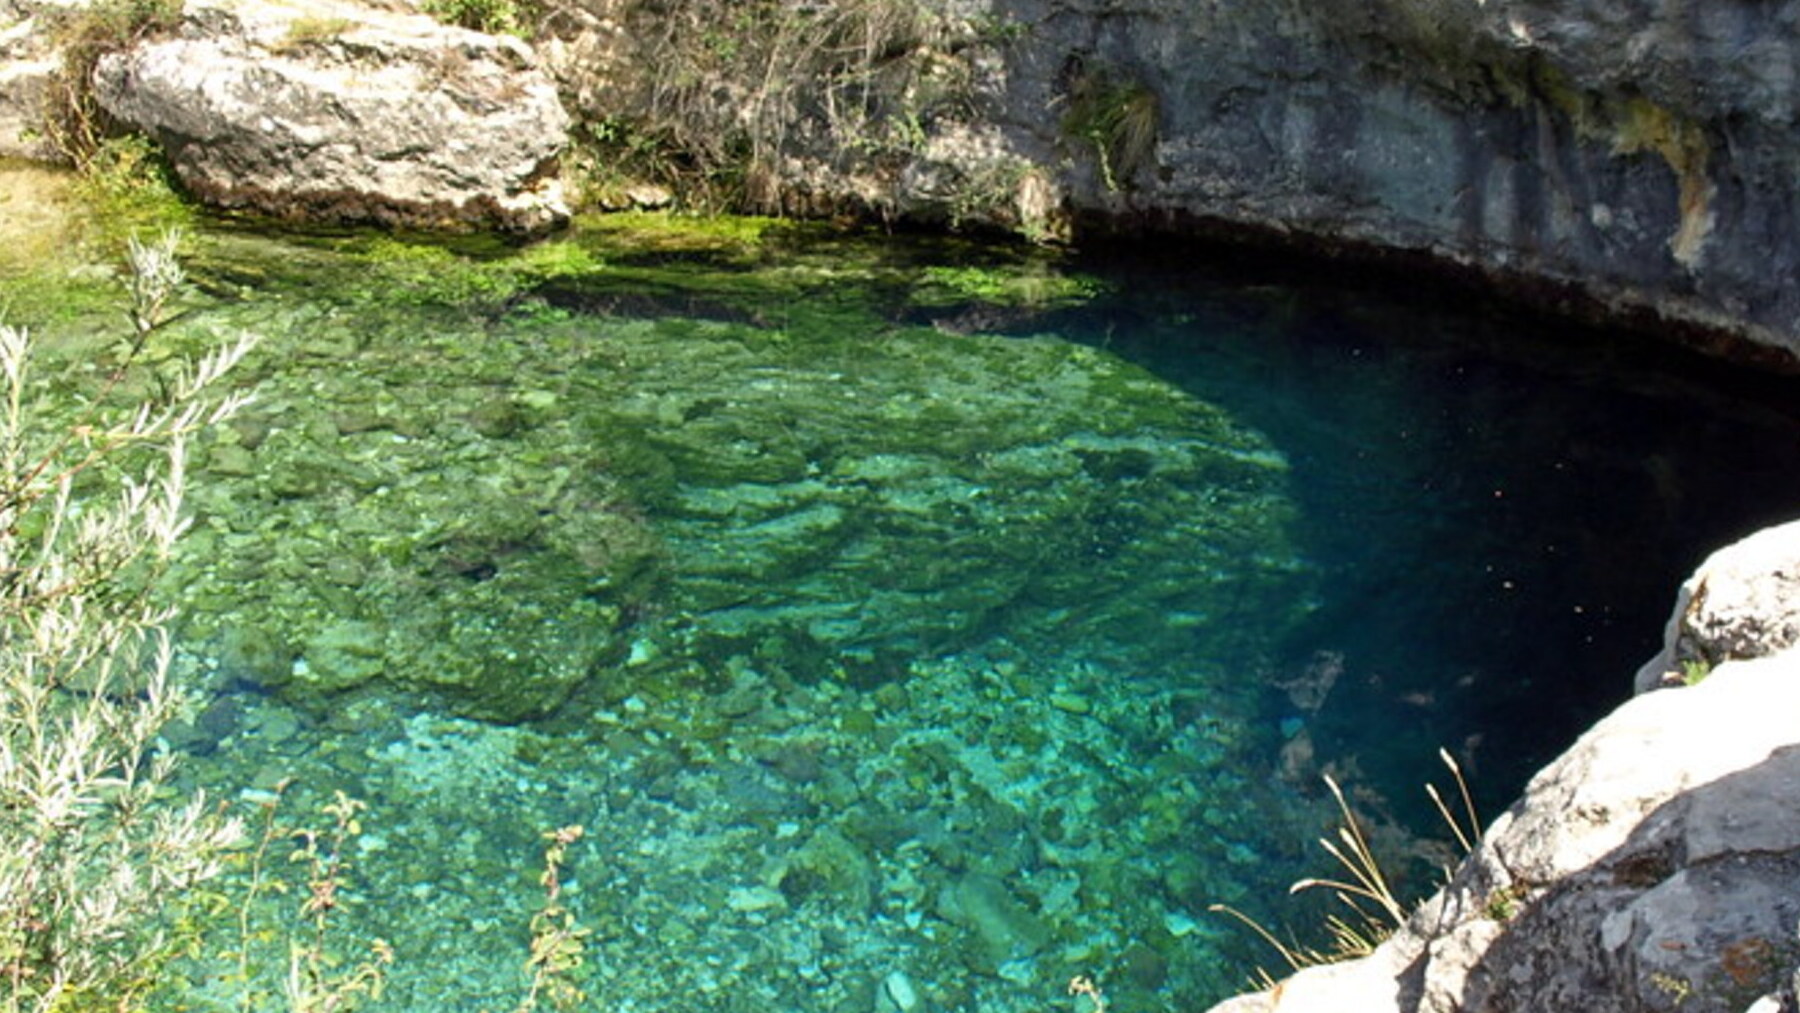 El éxotico y desconocido manantial con aguas azul turquesa que merece la pena visitar un fin de semana